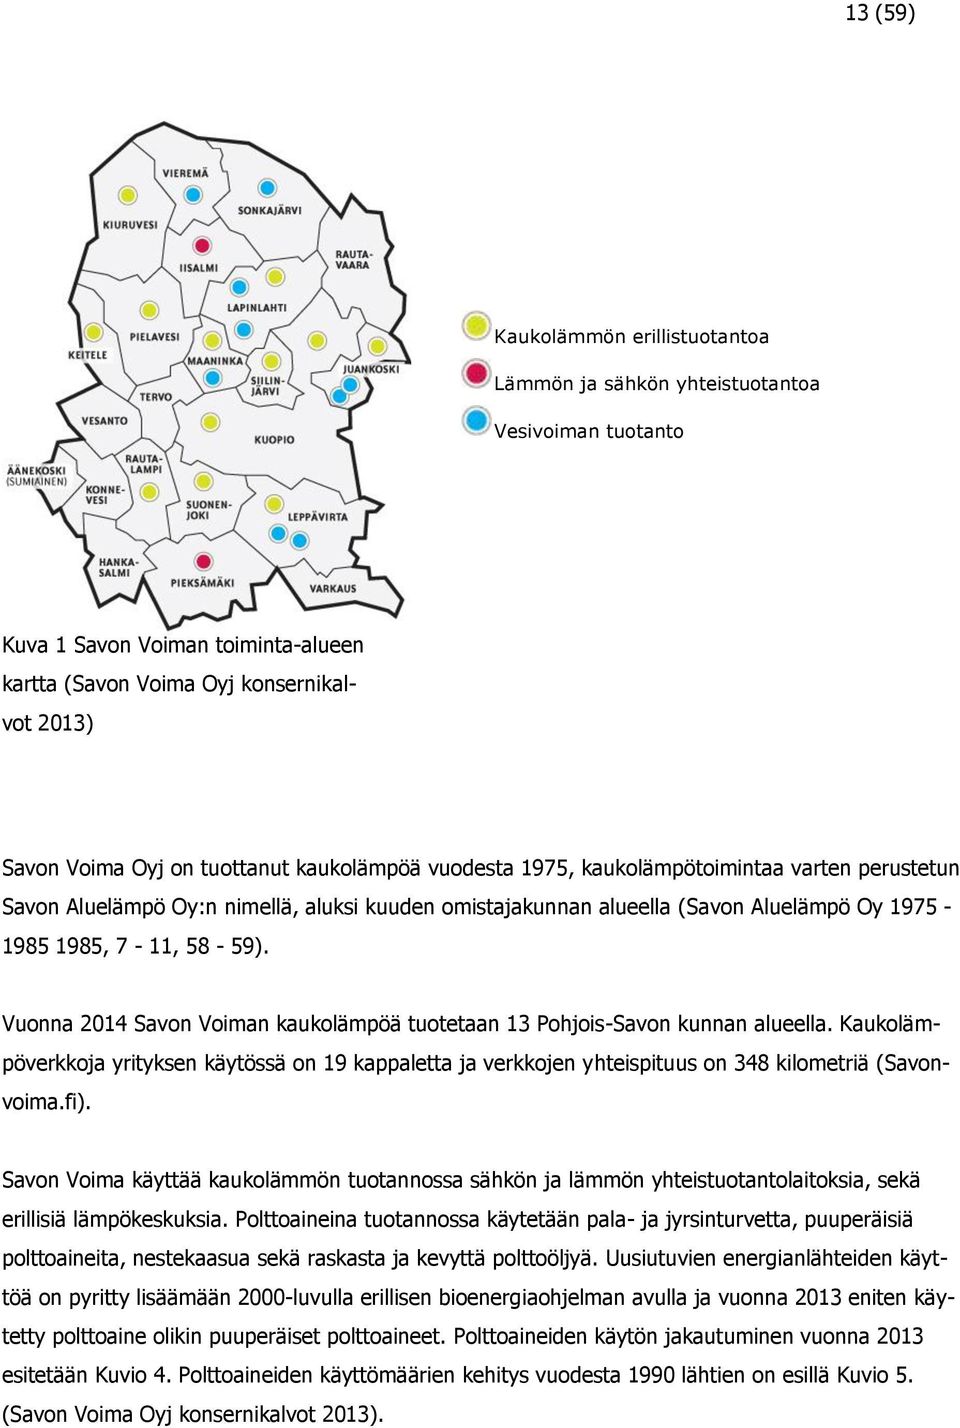 Vuonna 2014 Savon Voiman kaukolämpöä tuotetaan 13 Pohjois-Savon kunnan alueella. Kaukolämpöverkkoja yrityksen käytössä on 19 kappaletta ja verkkojen yhteispituus on 348 kilometriä (Savonvoima.fi).